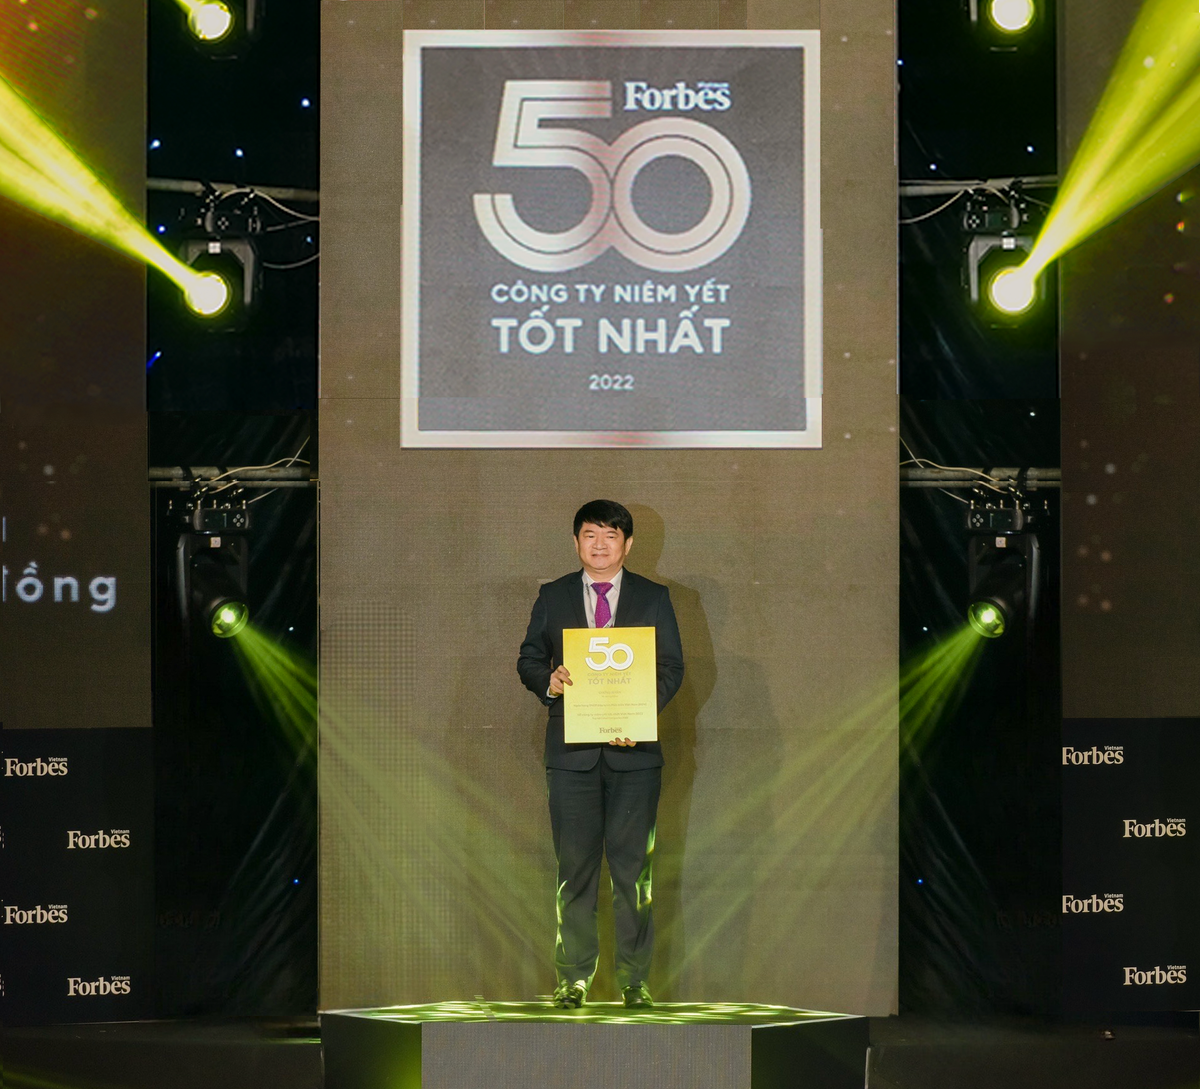 Ông Lê Trung Thành, Phó Tổng giám đốc BIDV nhận chứng nhận vinh danh 50 công ty niêm yết tốt nhất do Forbes Việt Nam bình chọn